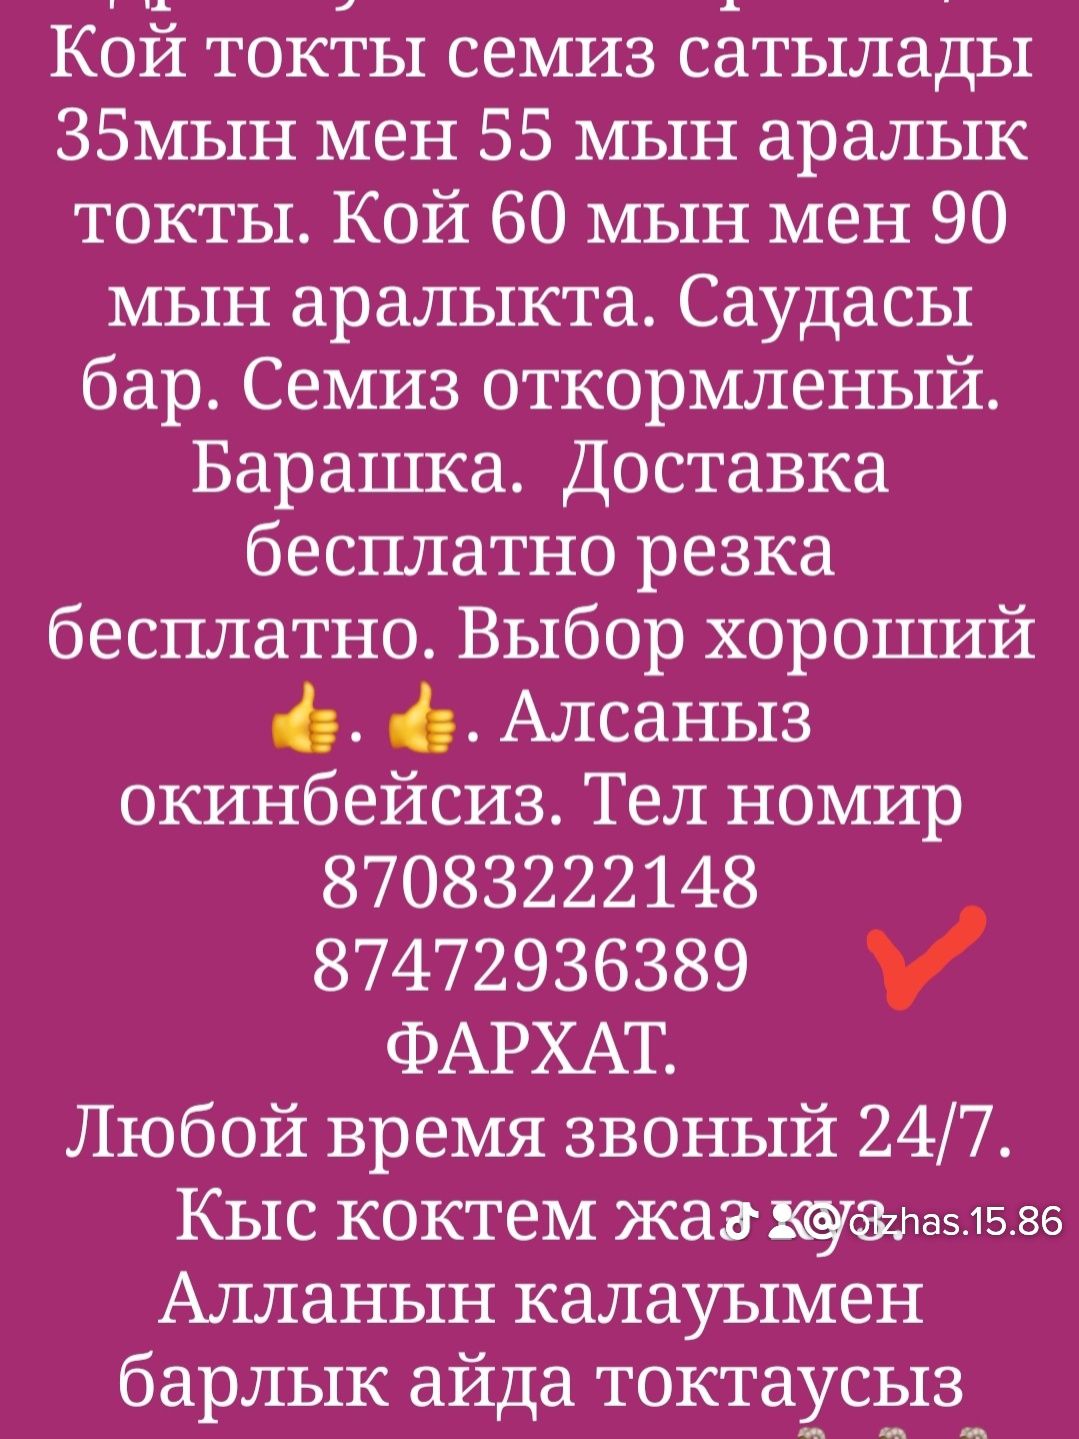 Кой Бараны токтушки продаётся 35000тысч г Алматы Доставка бесплатно р